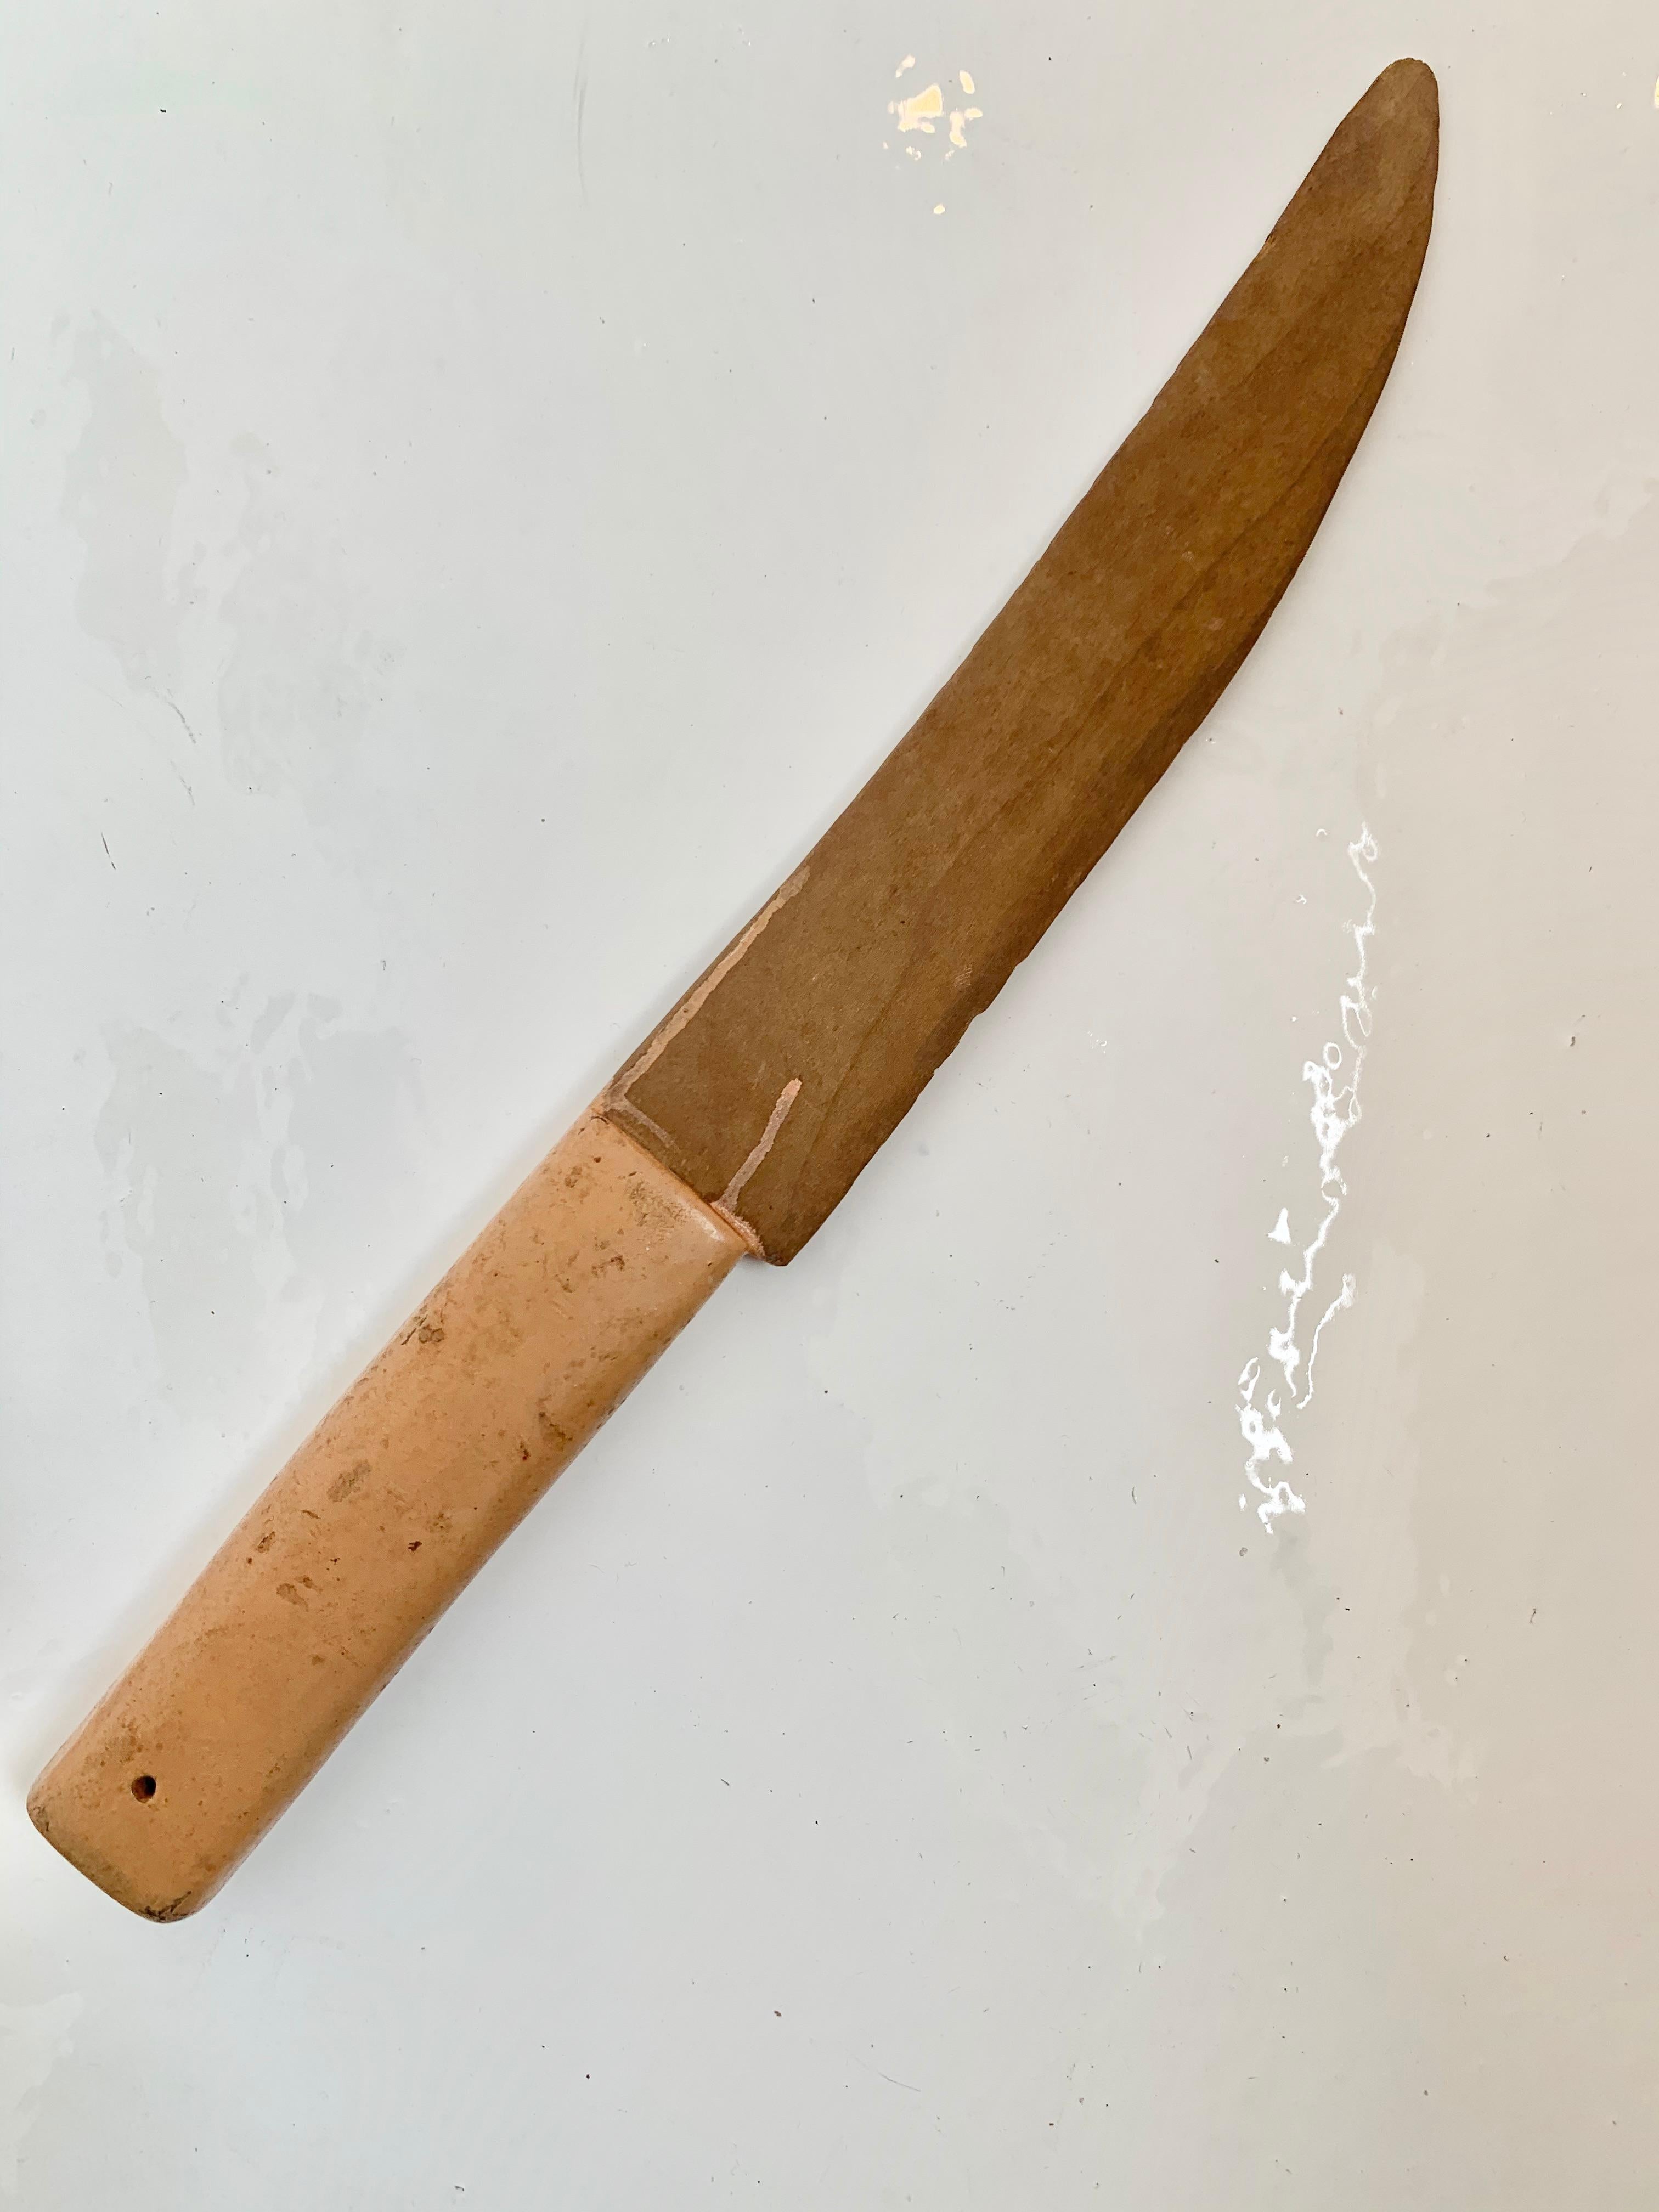 Fantastische Holzschnitzerei eines Messers. Knapp 15